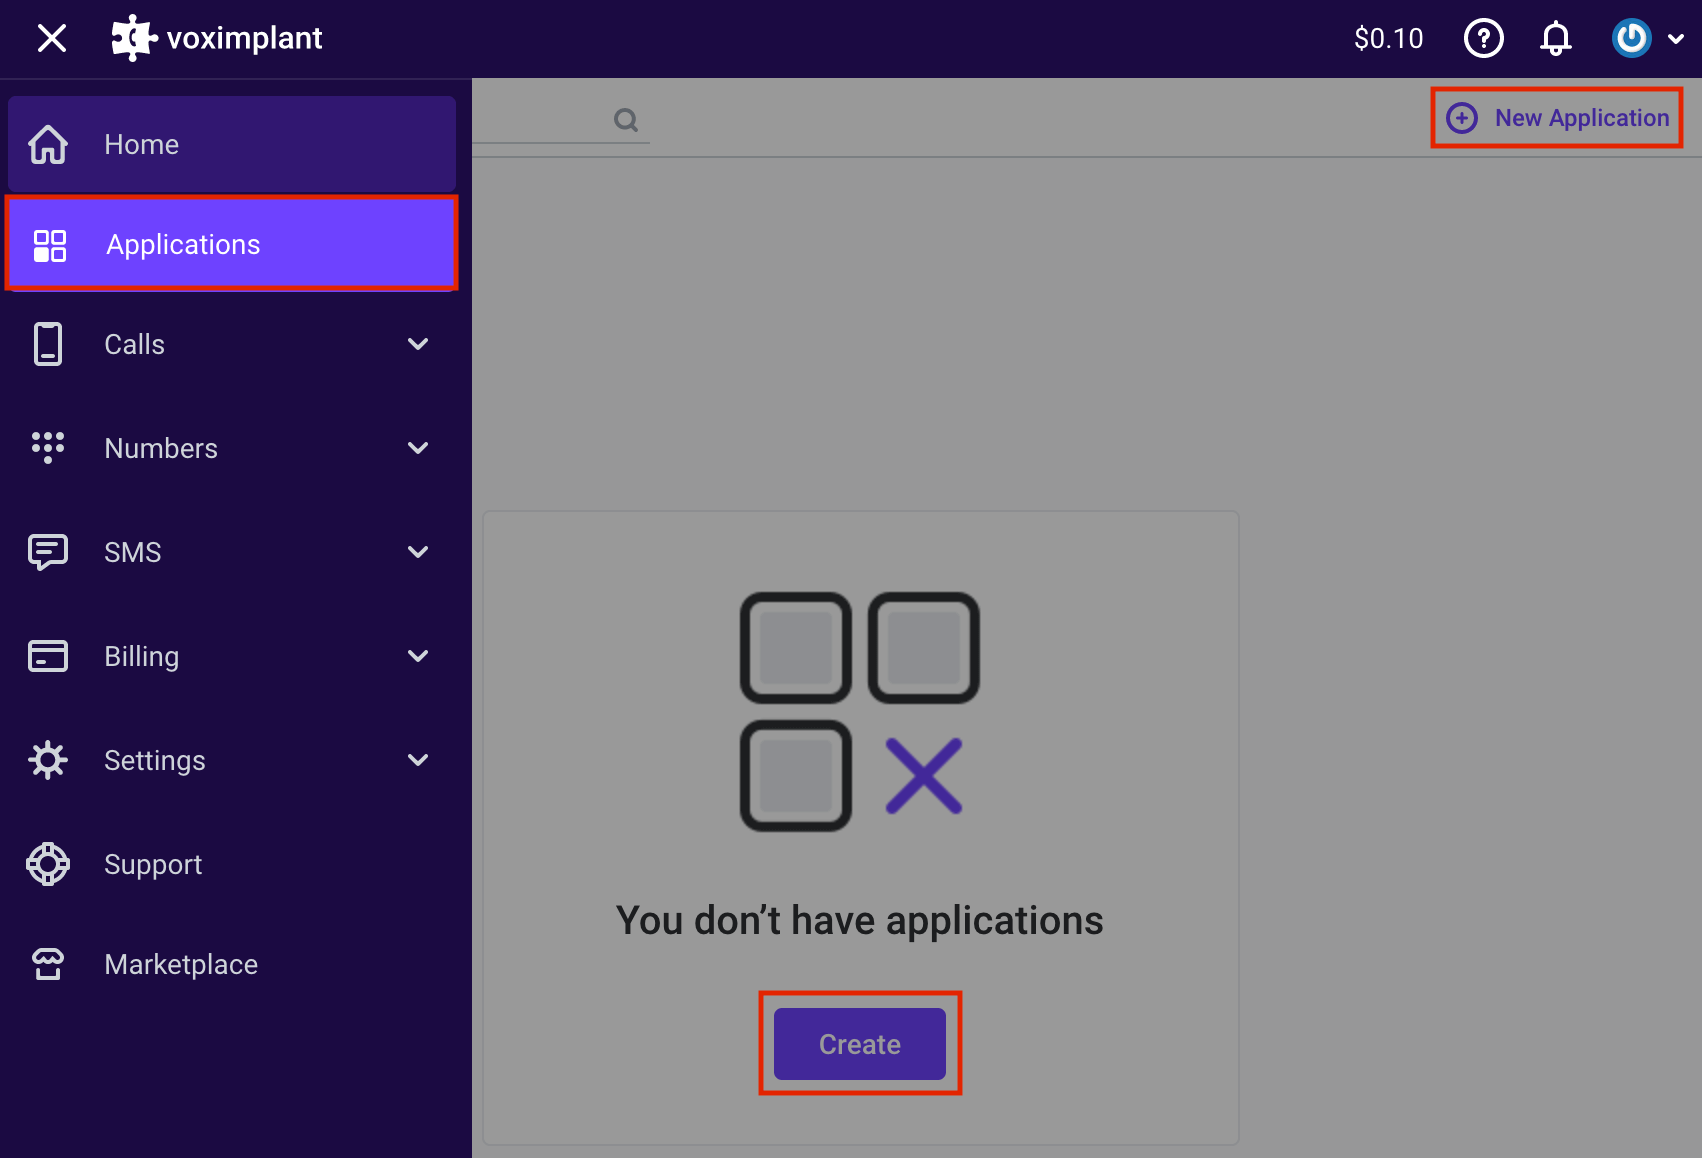 Create an application